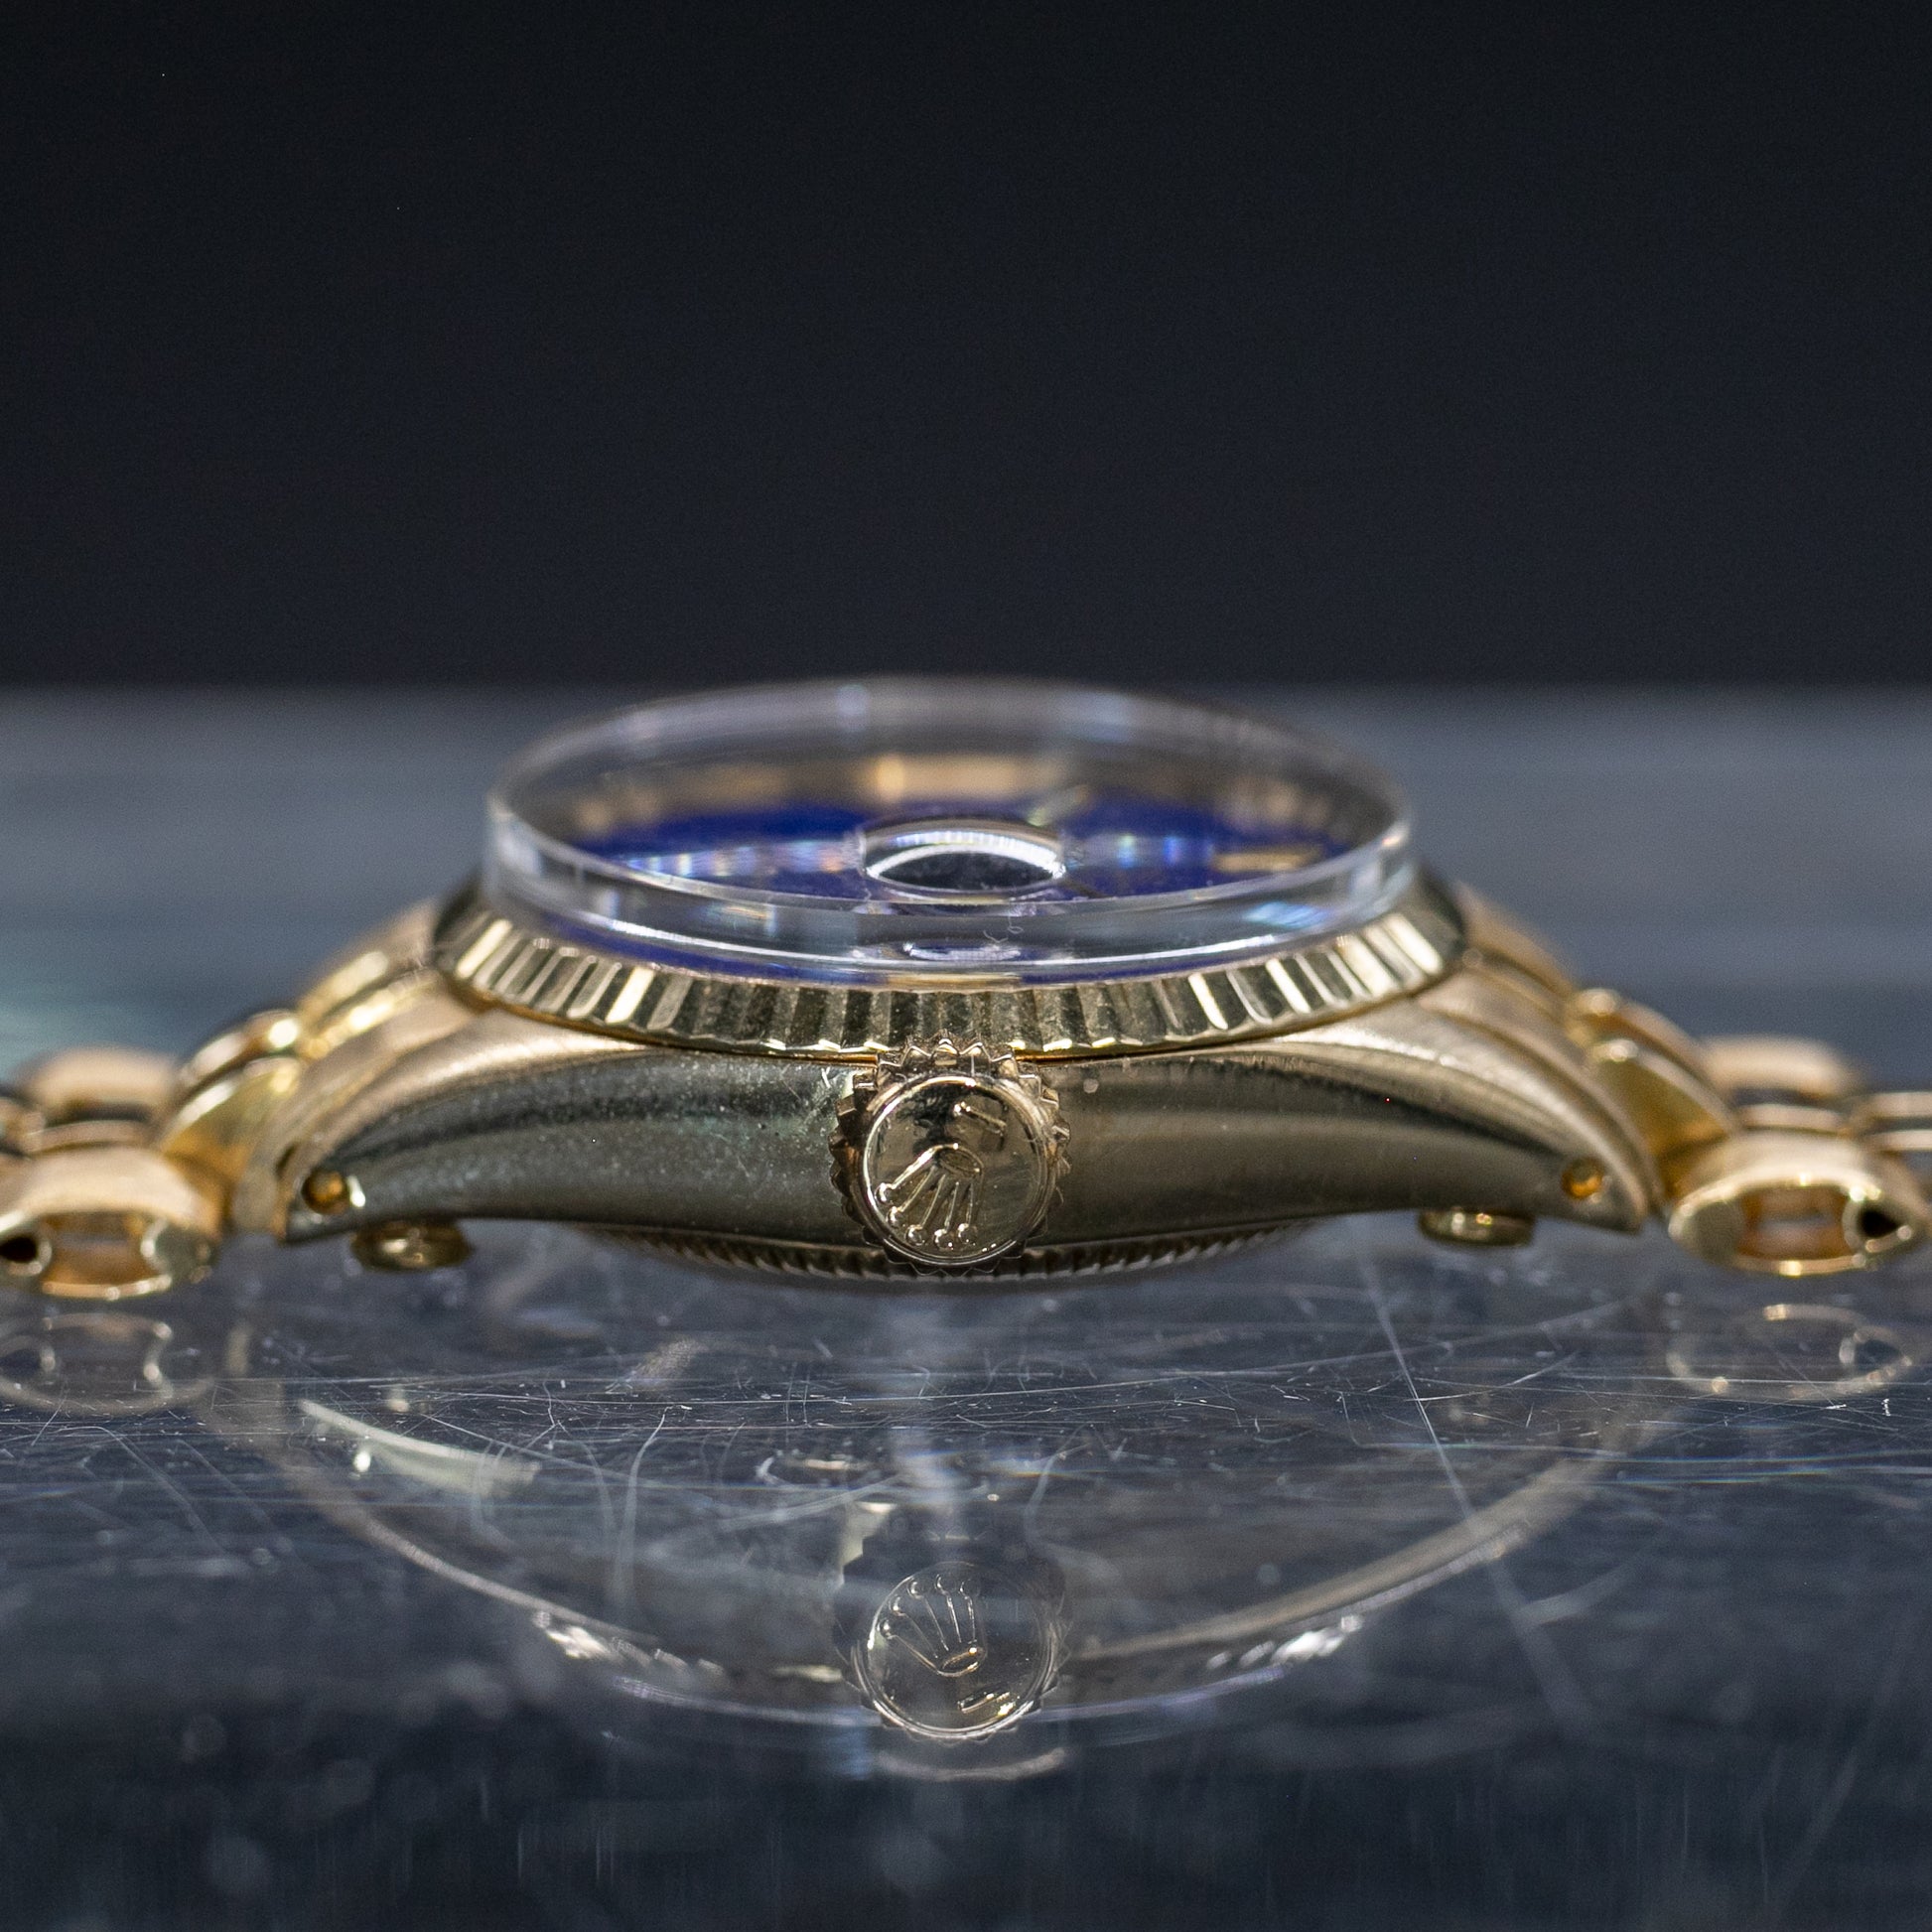 Rolex Datejust Lady en Or jaune Cadran Lapis Lazuli - L'Atelier du Temps